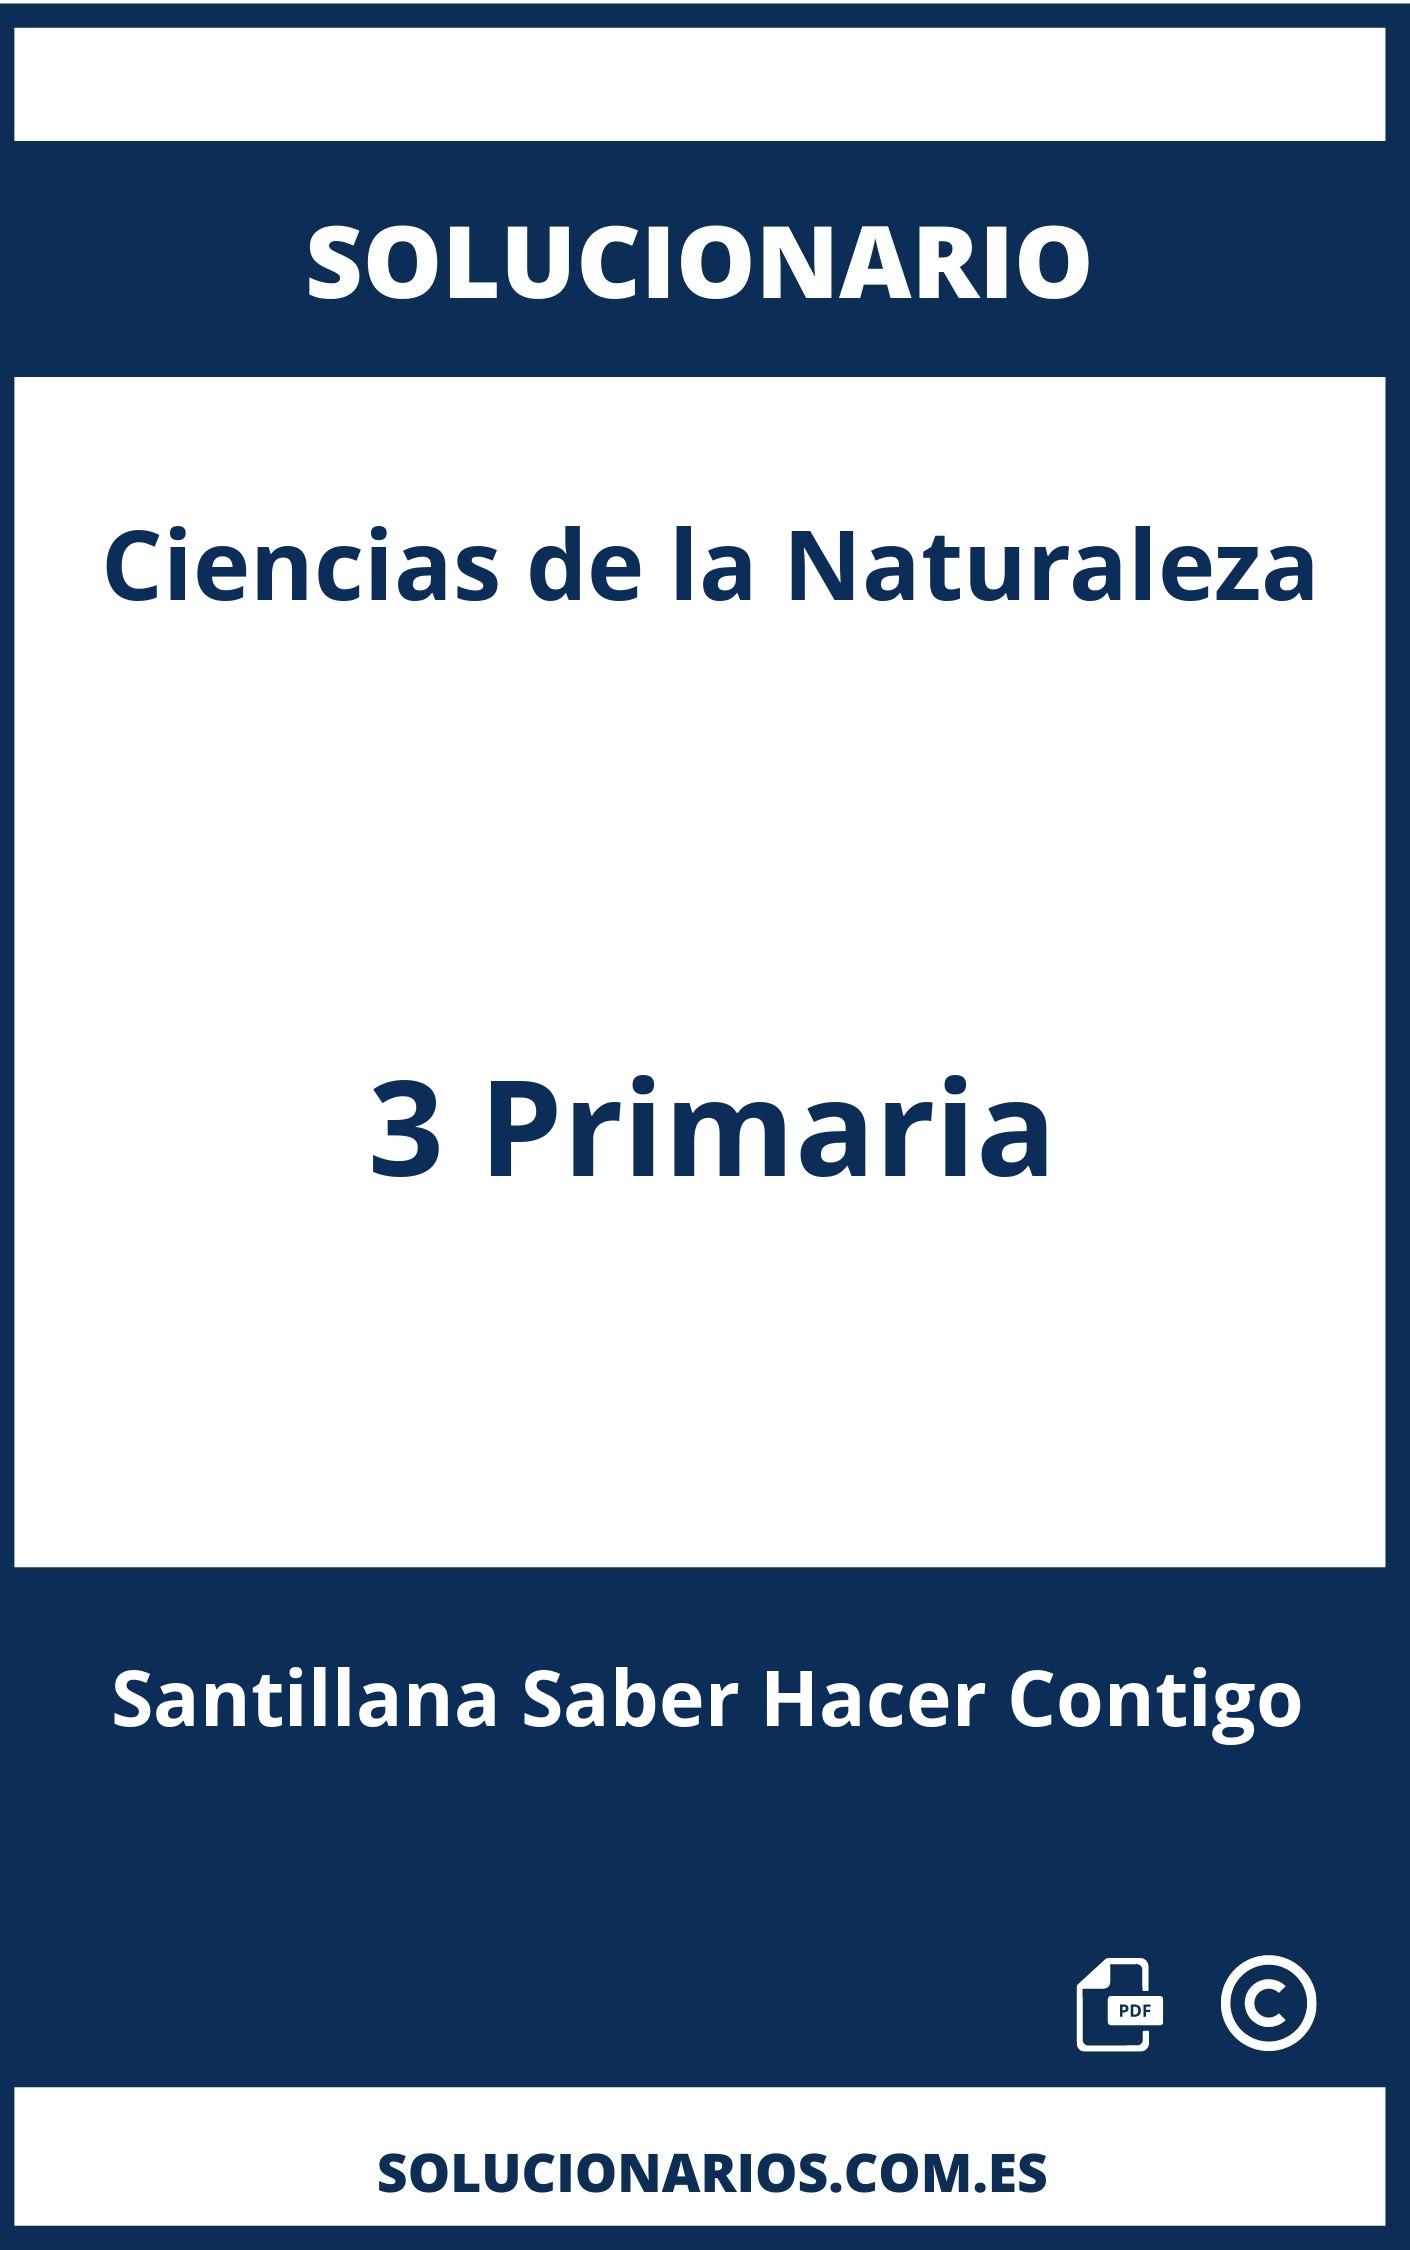 Solucionario Ciencias de la Naturaleza 3 Primaria Santillana Saber Hacer Contigo